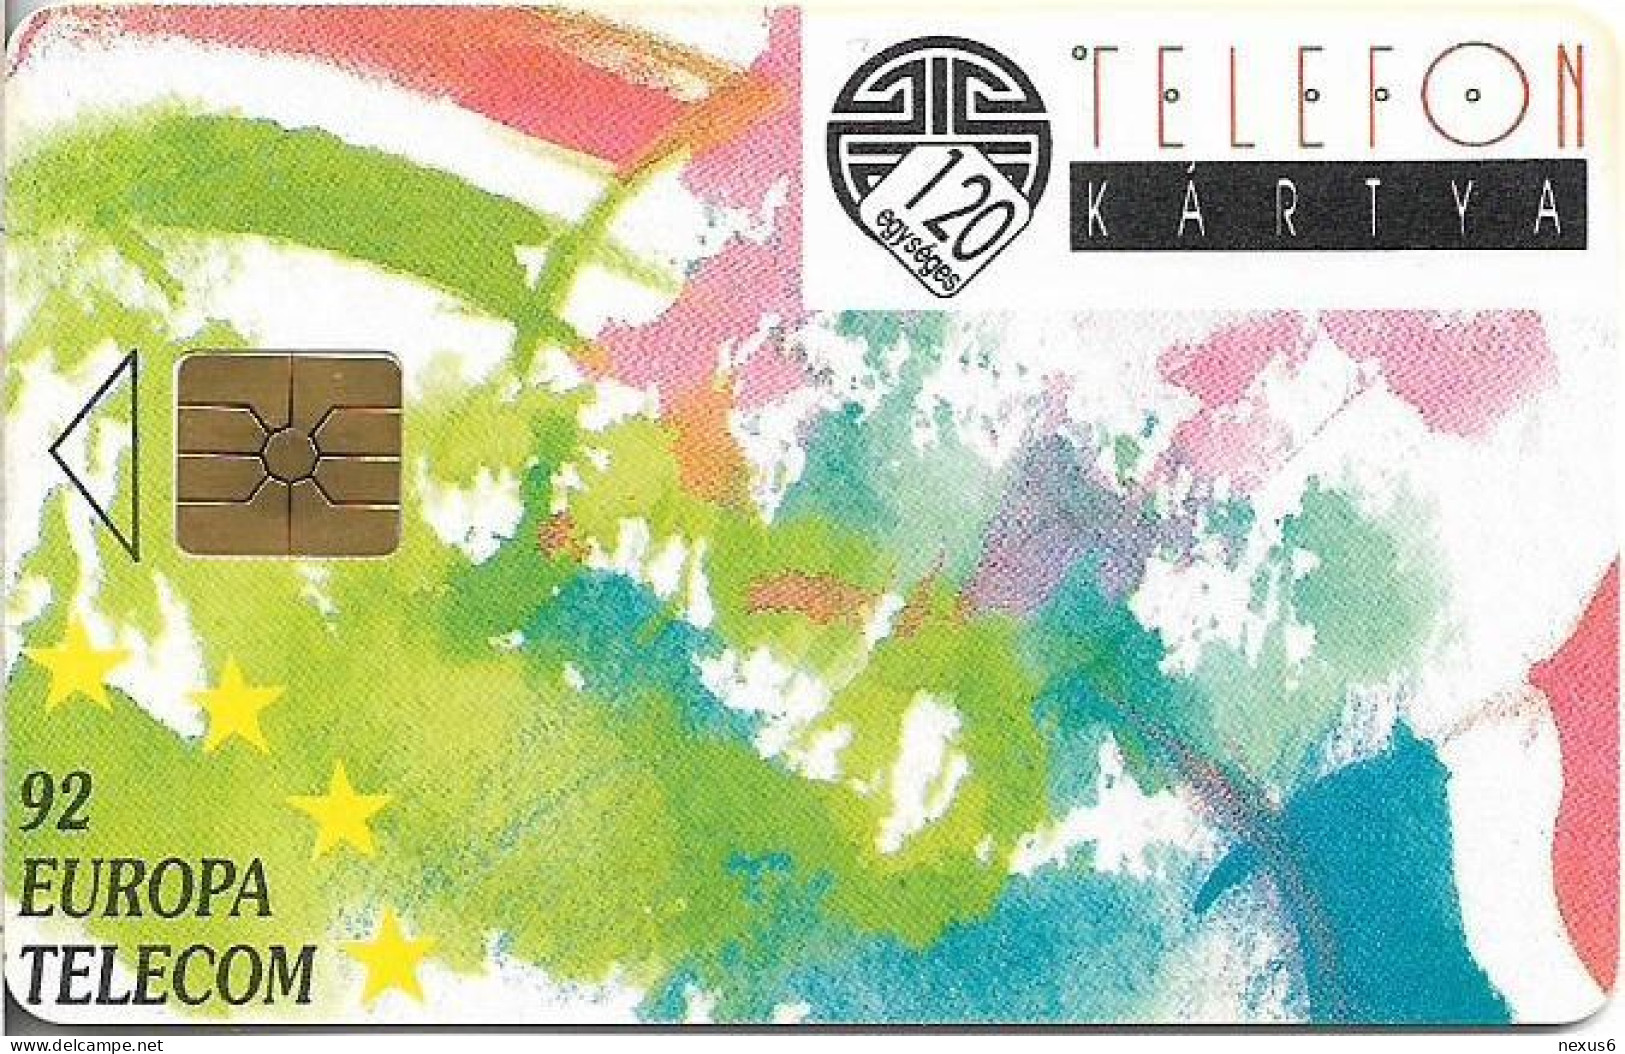 Hungary - Matáv - Europa Telecom 92, Gem1B Not Symm. Red, With Transp. Moreno, 10.1992, 120U, 10.000ex, Used - Hongrie